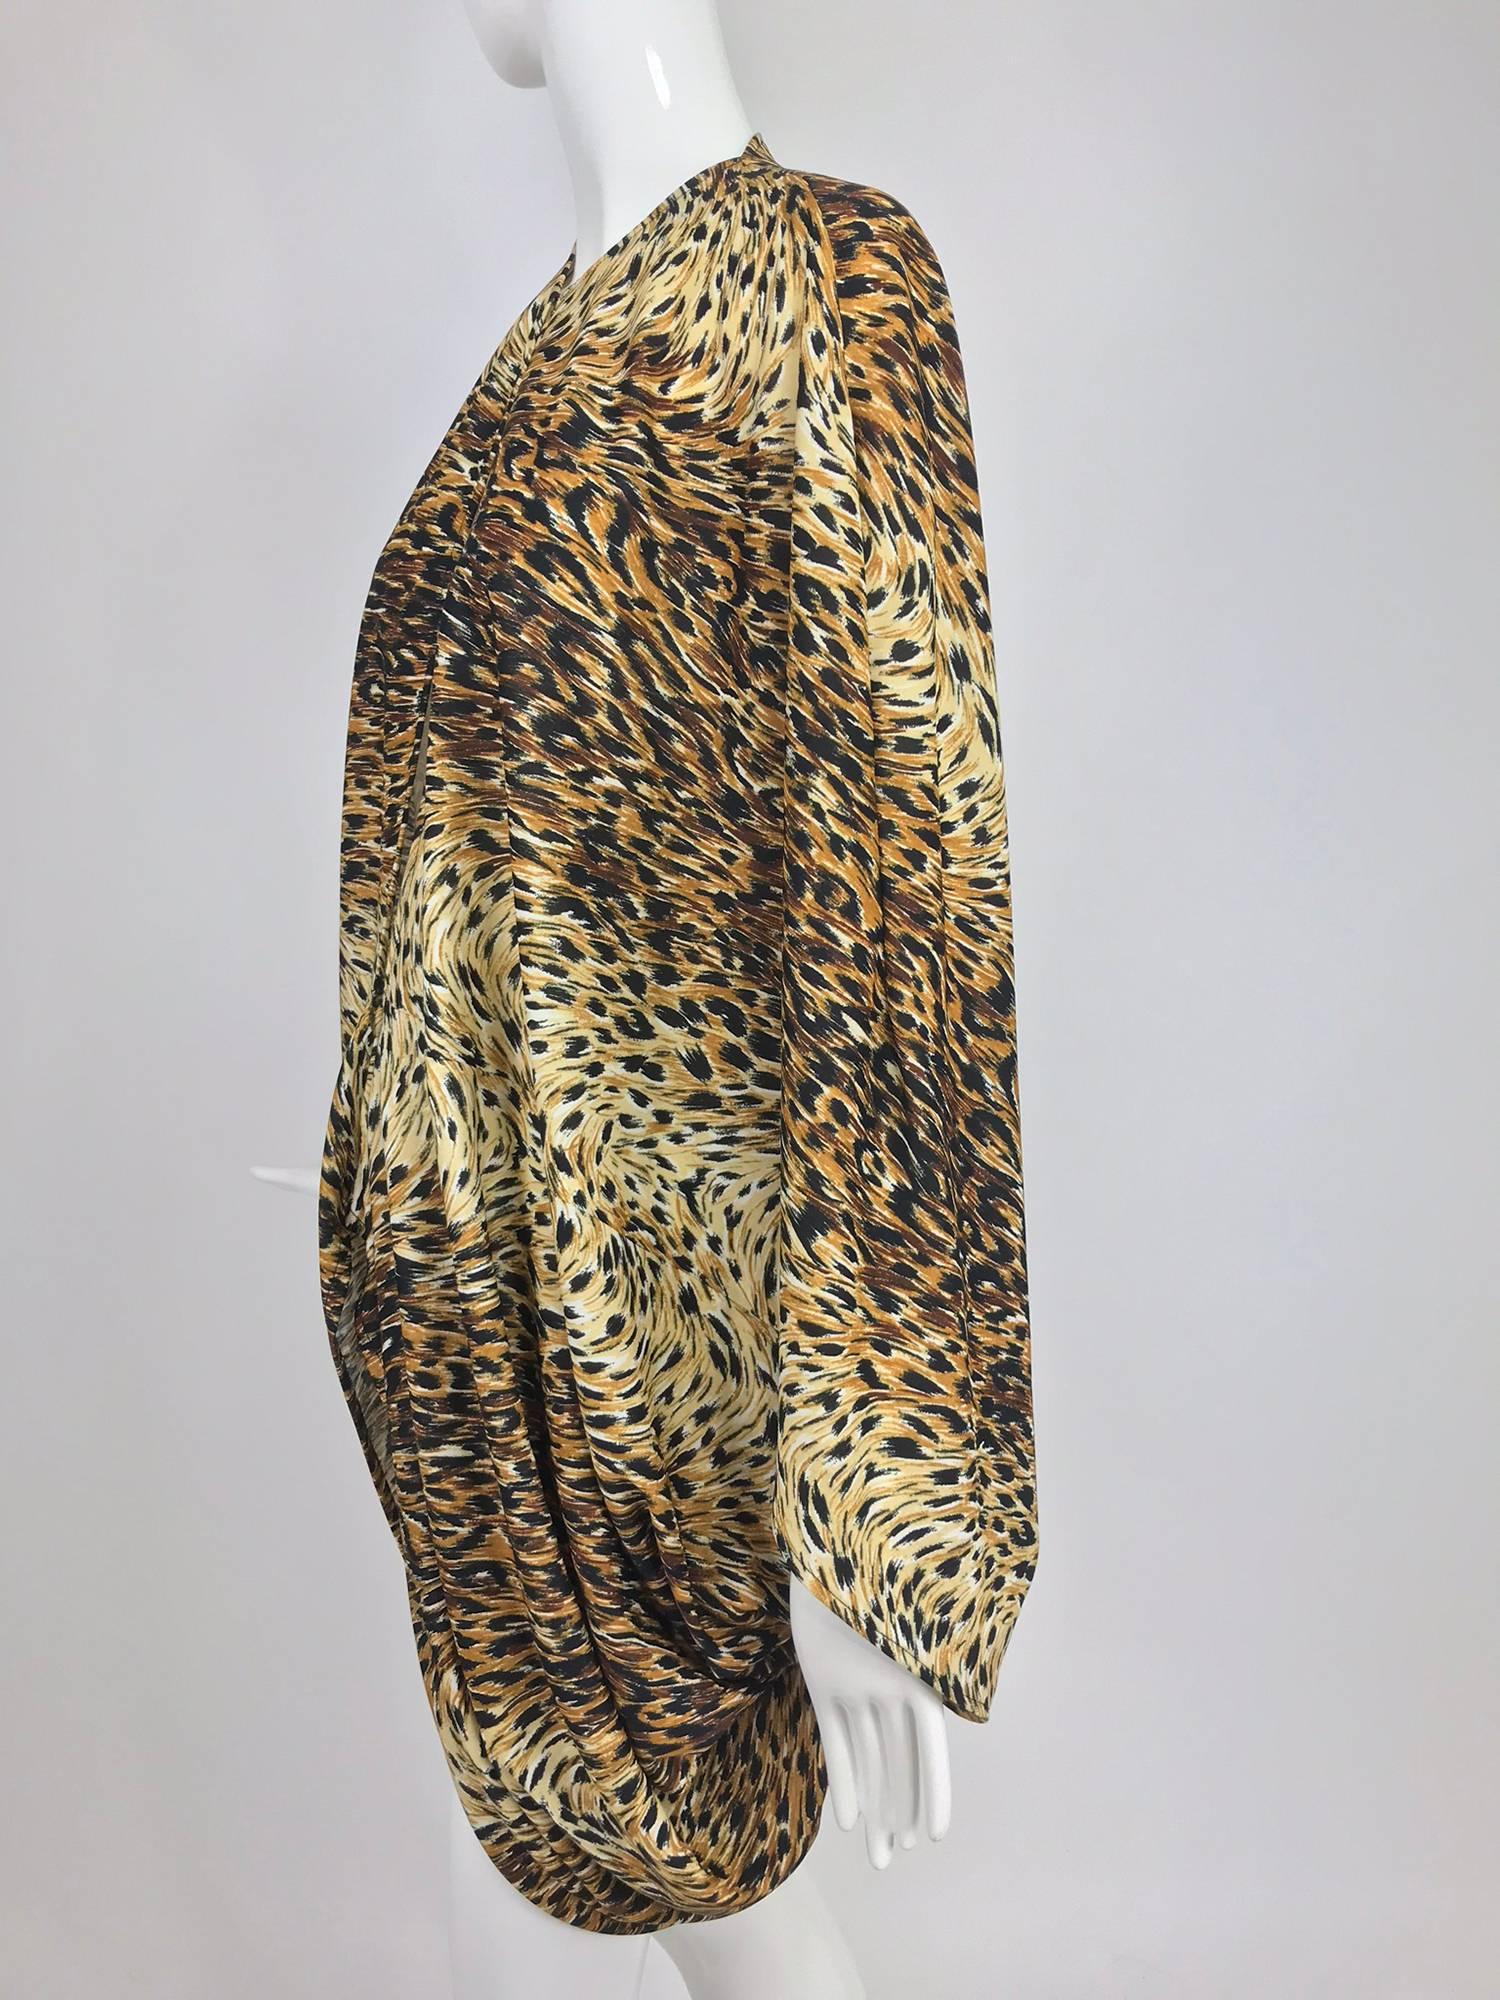 Marron Norma Kamali - Veste cocon imprimé léopard OMO, années 1980 en vente